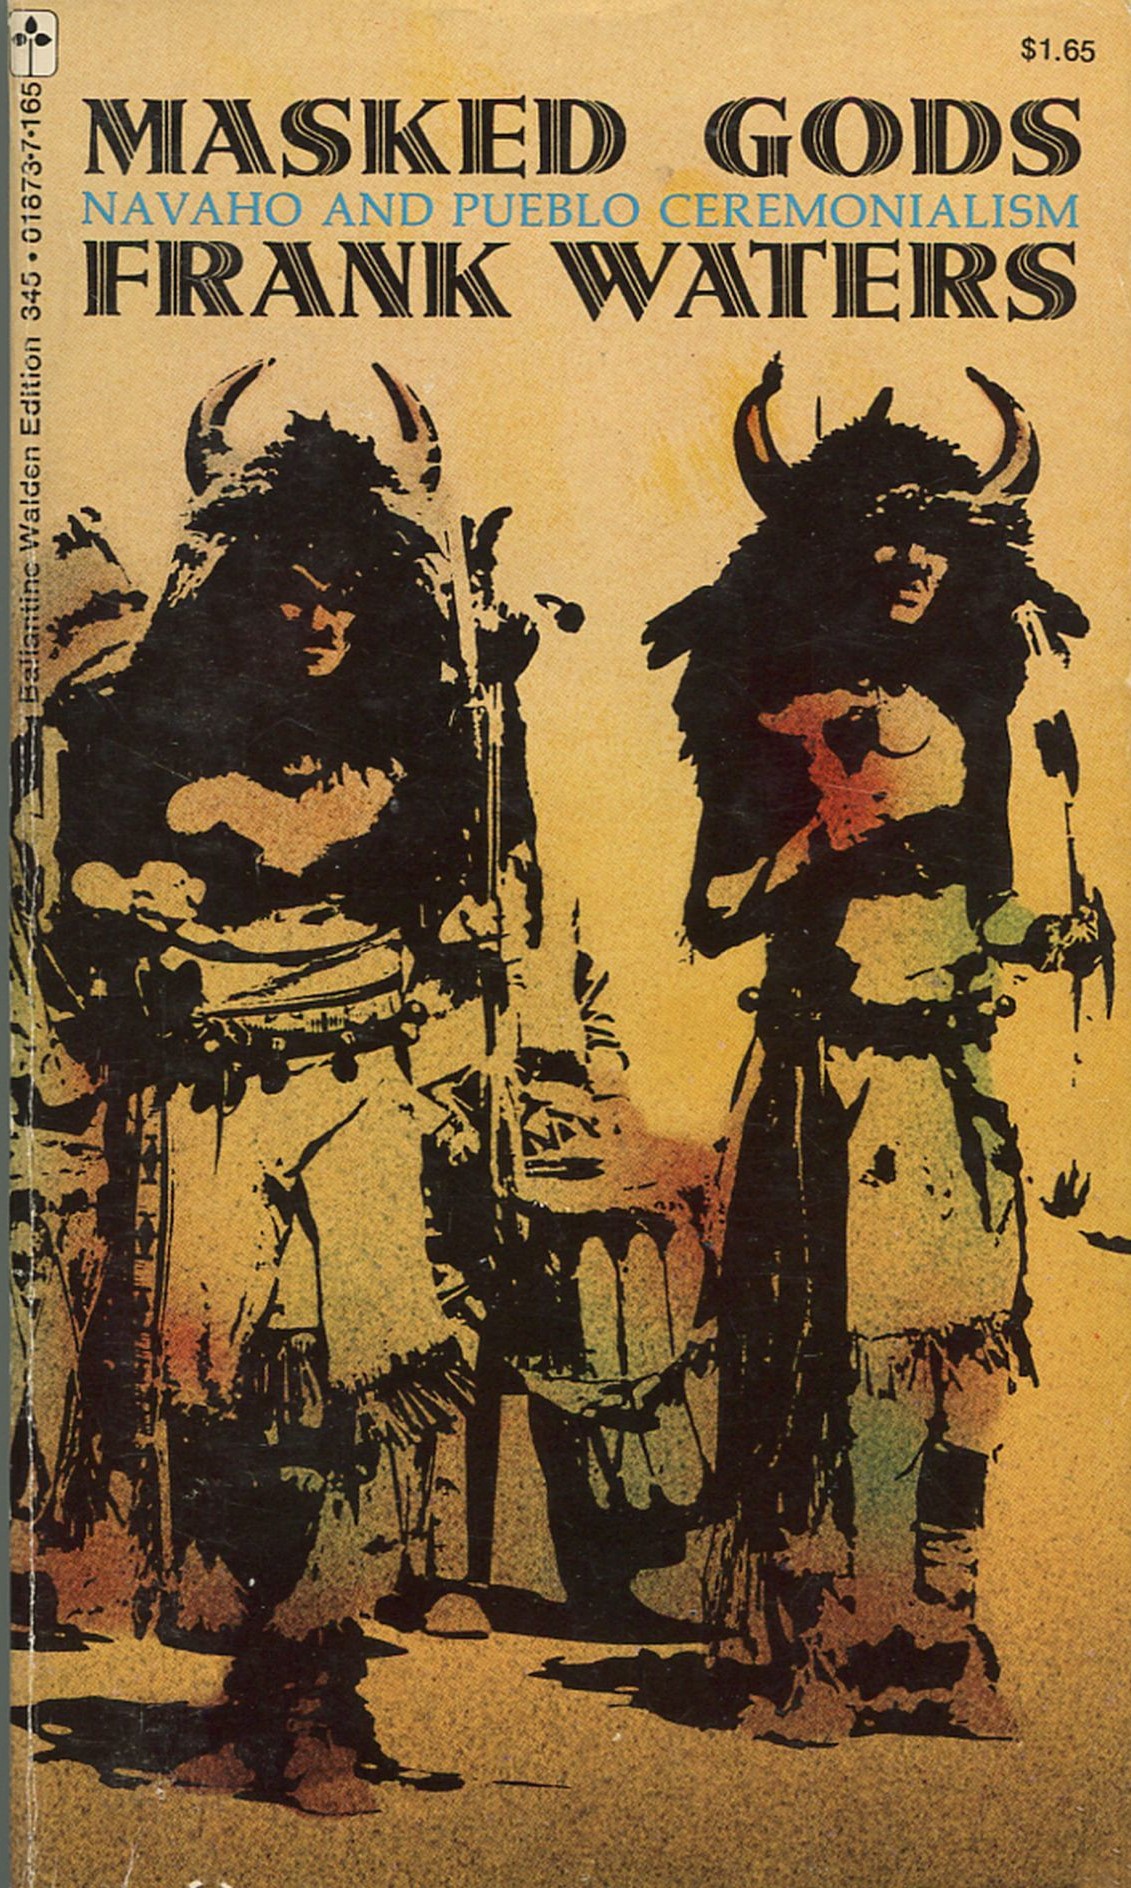 
Masked Gods: Navaho and Pueblo Ceremonialism (image)